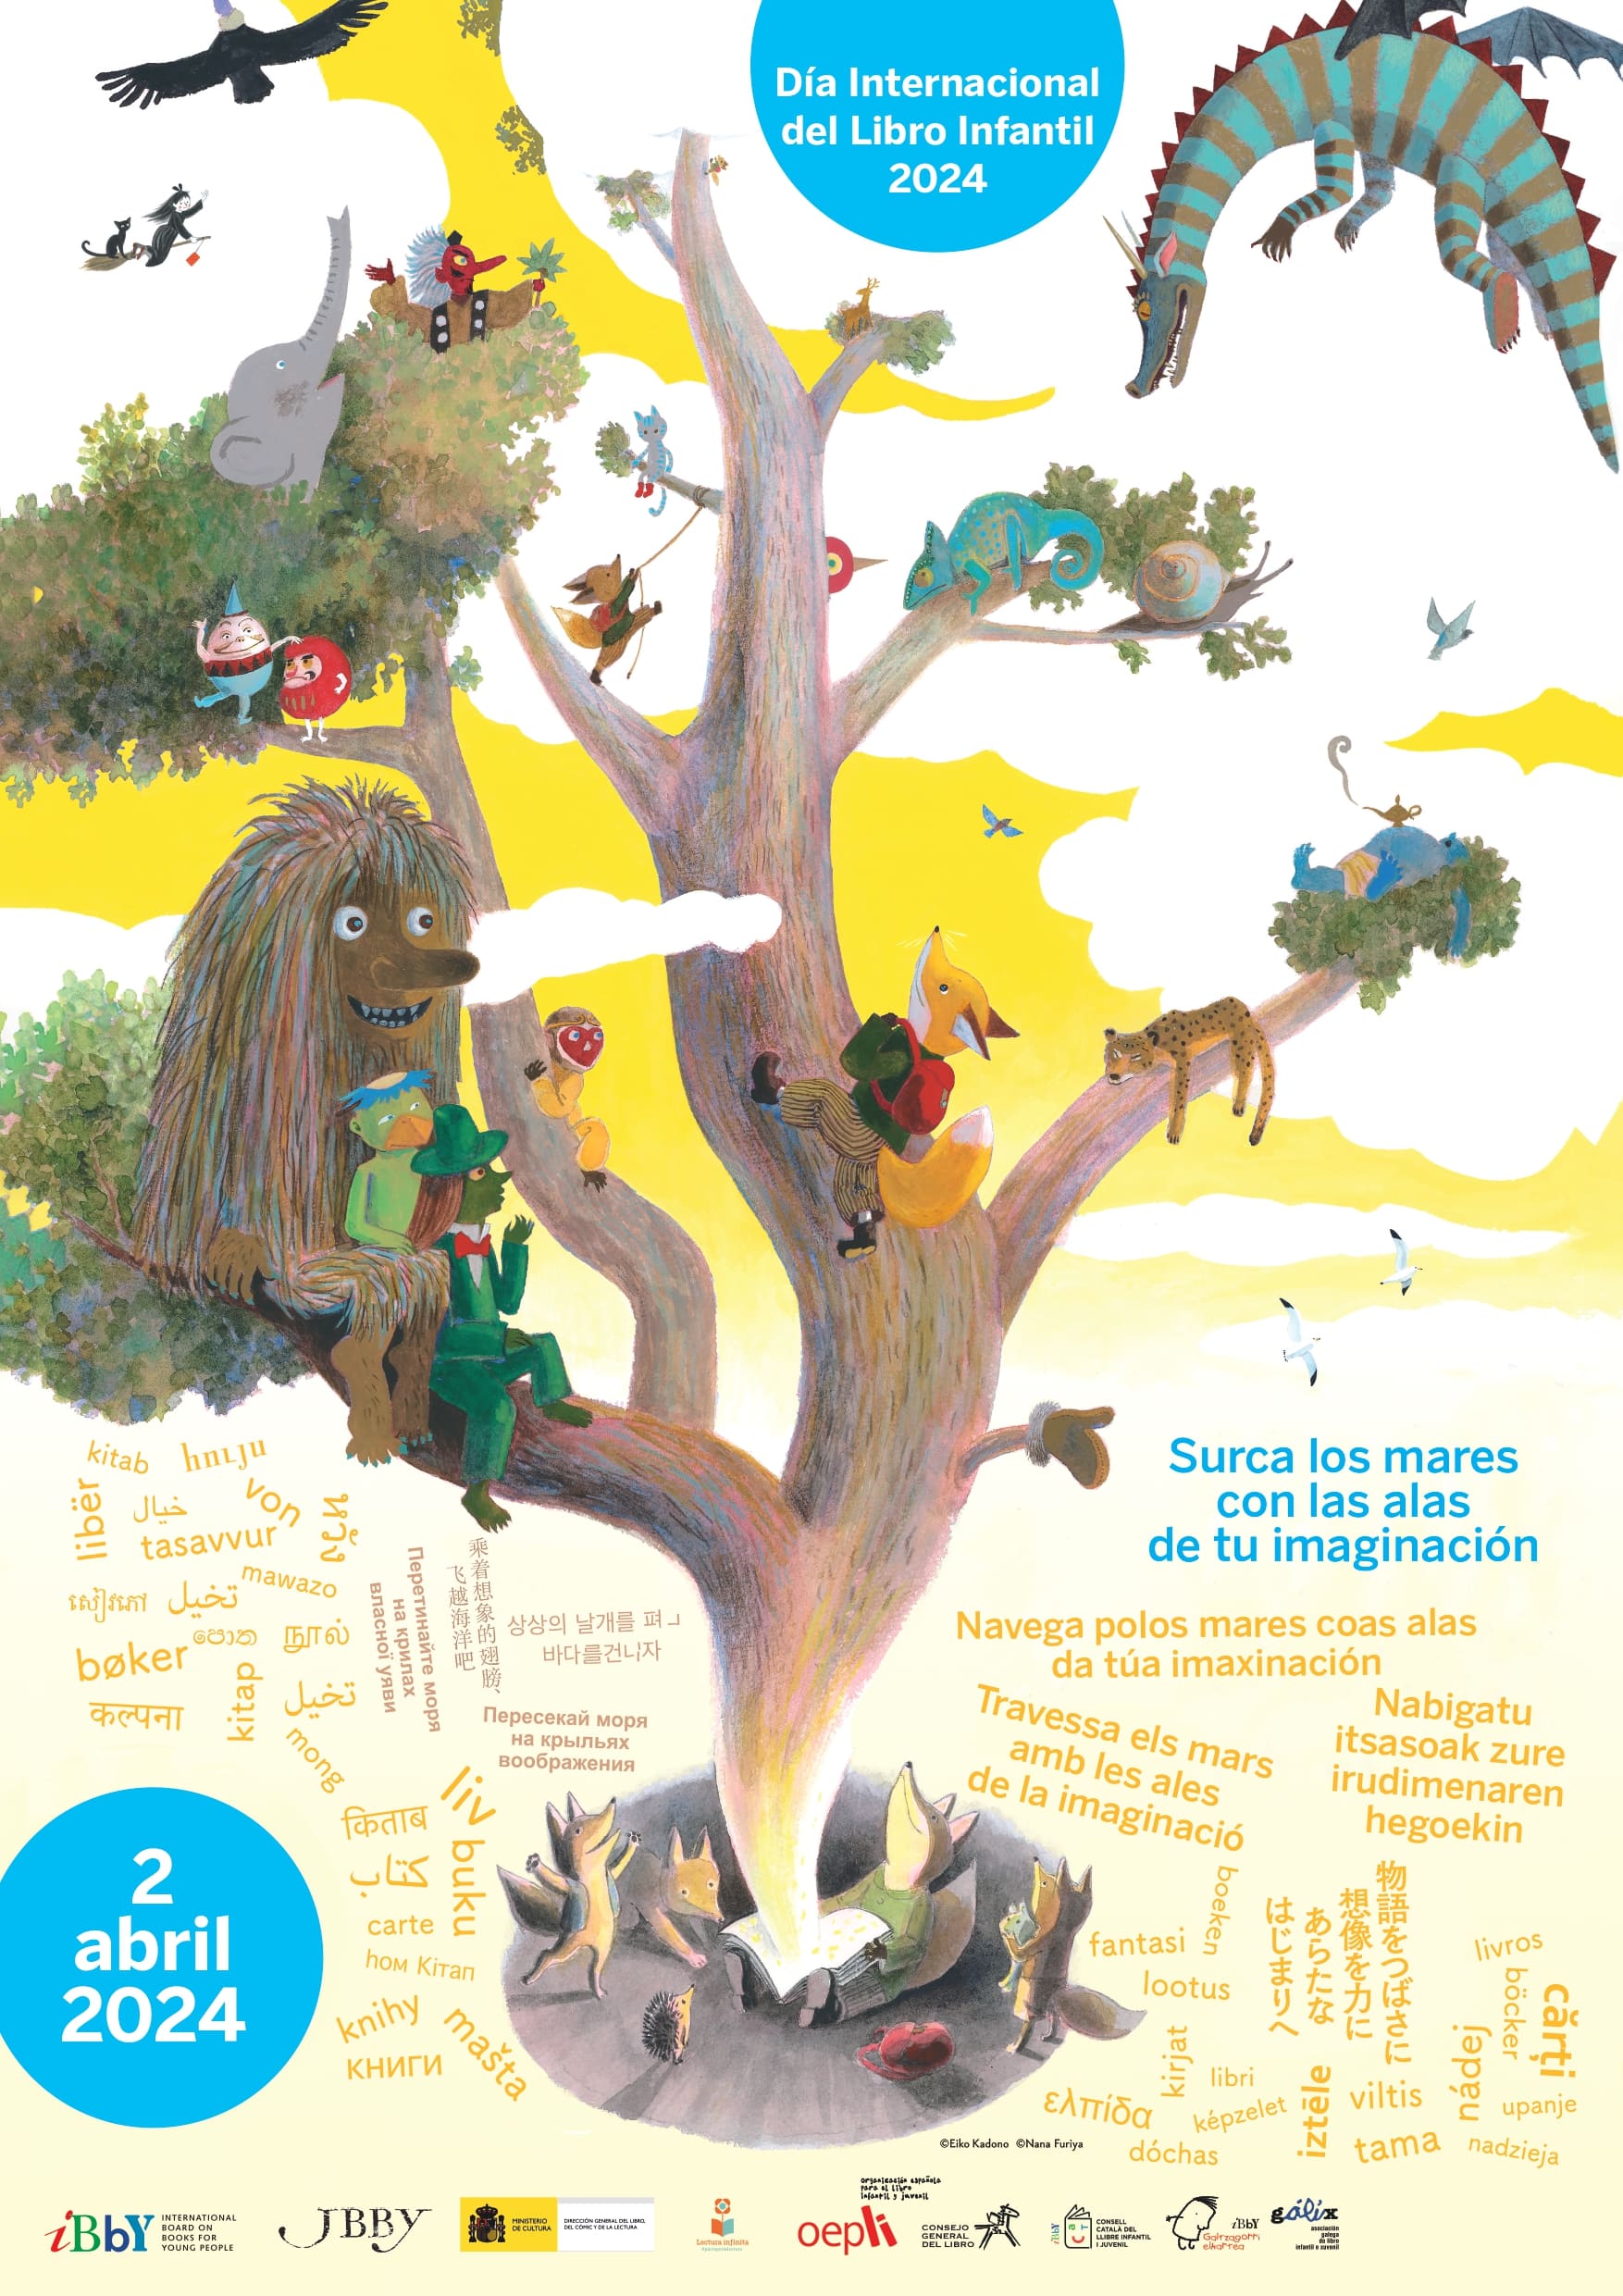 Cartel anunciador del Día del Libro Infantil 2024 que representa un árbol habitado por personajes de cuento